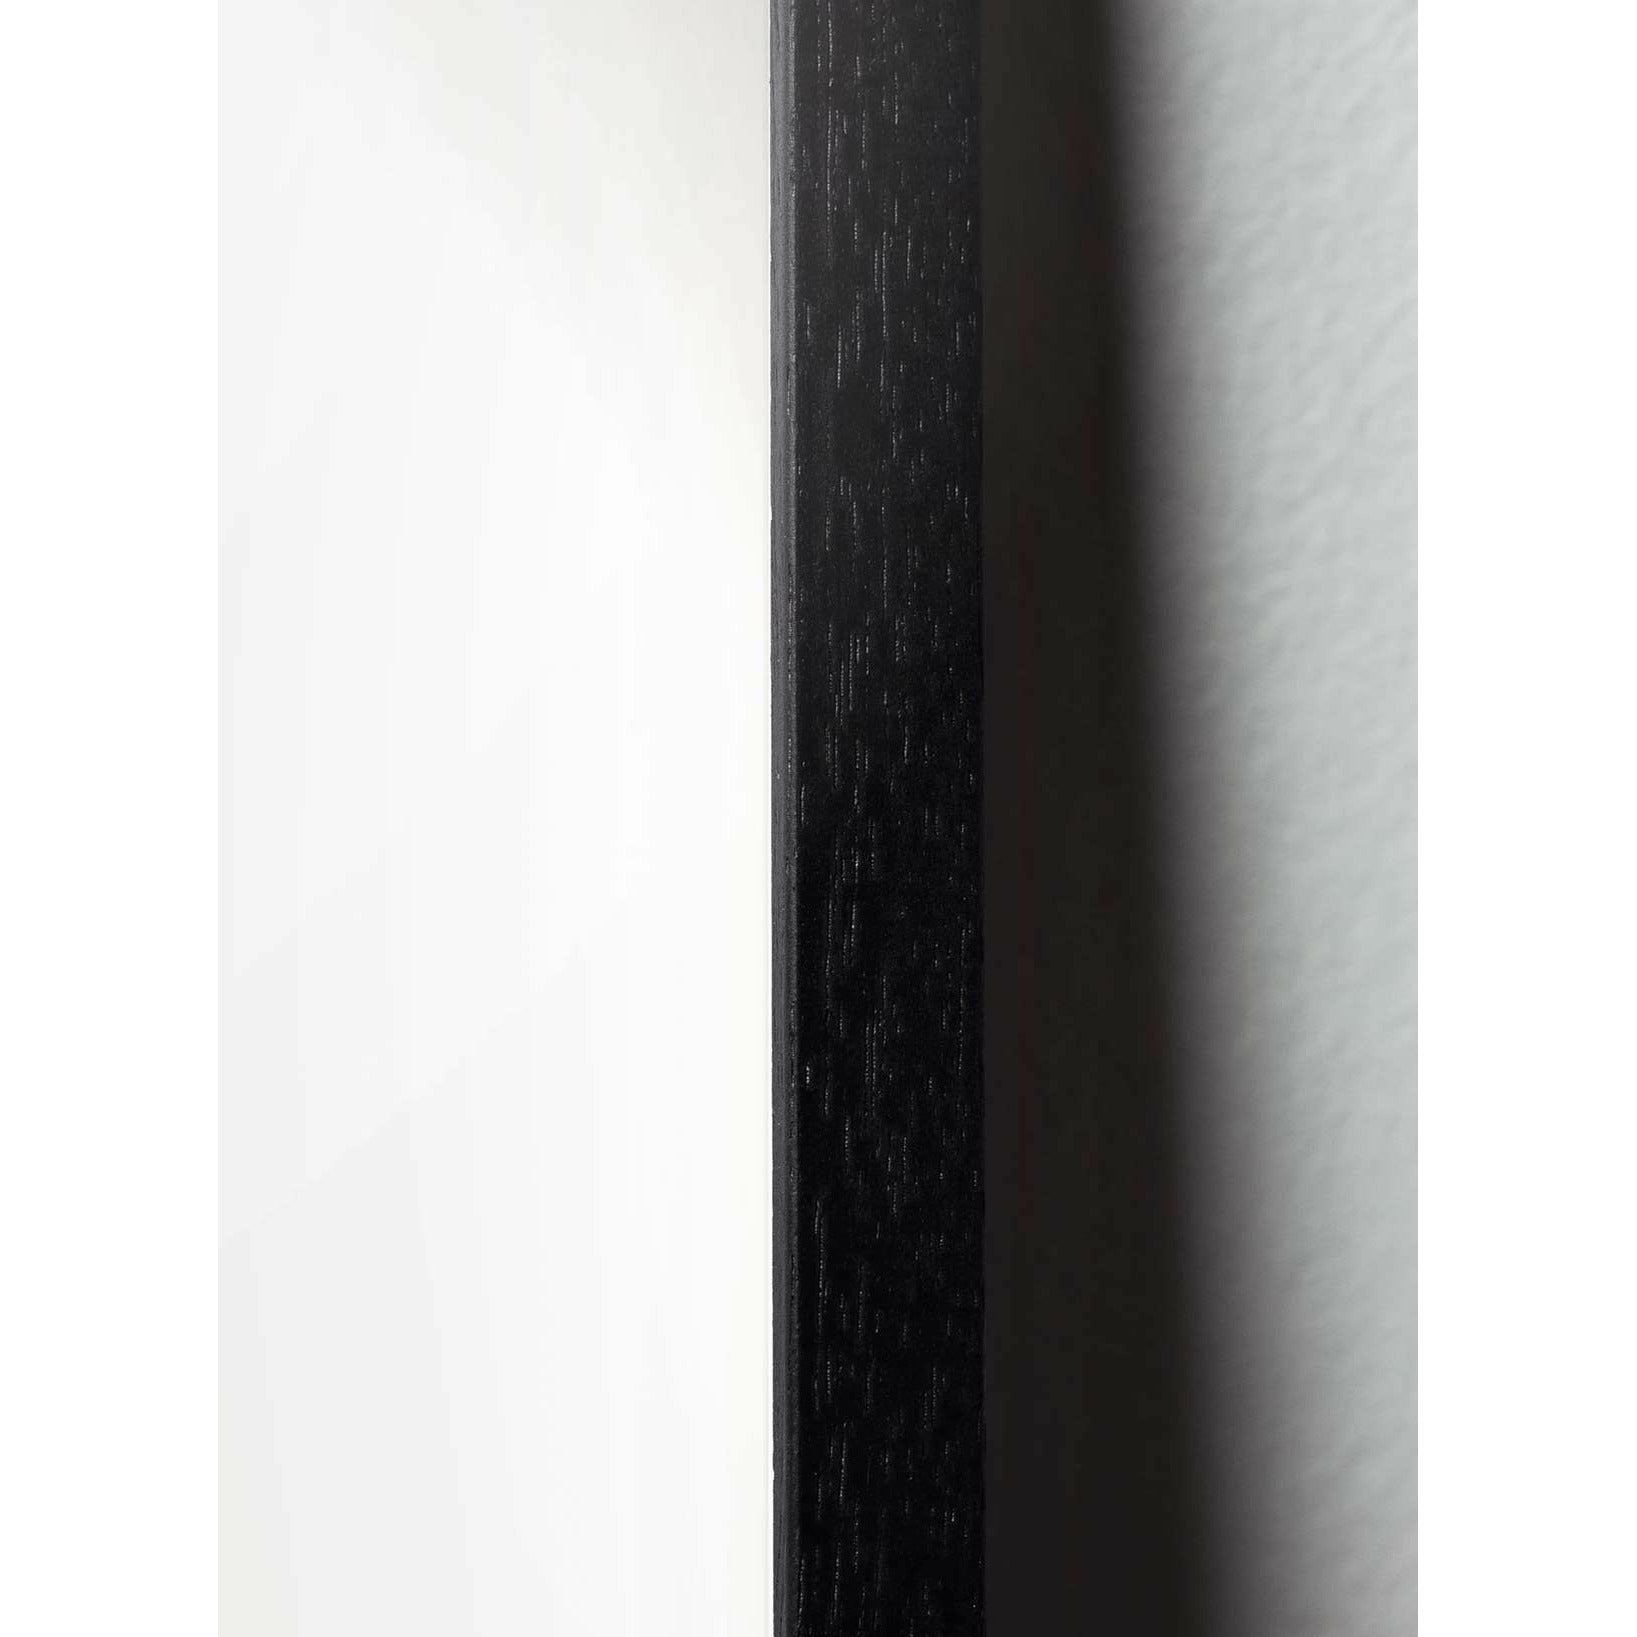 Brainchild Äggfigurens korsformat affisch, ram i svart -målat trä 70x100 cm, svart